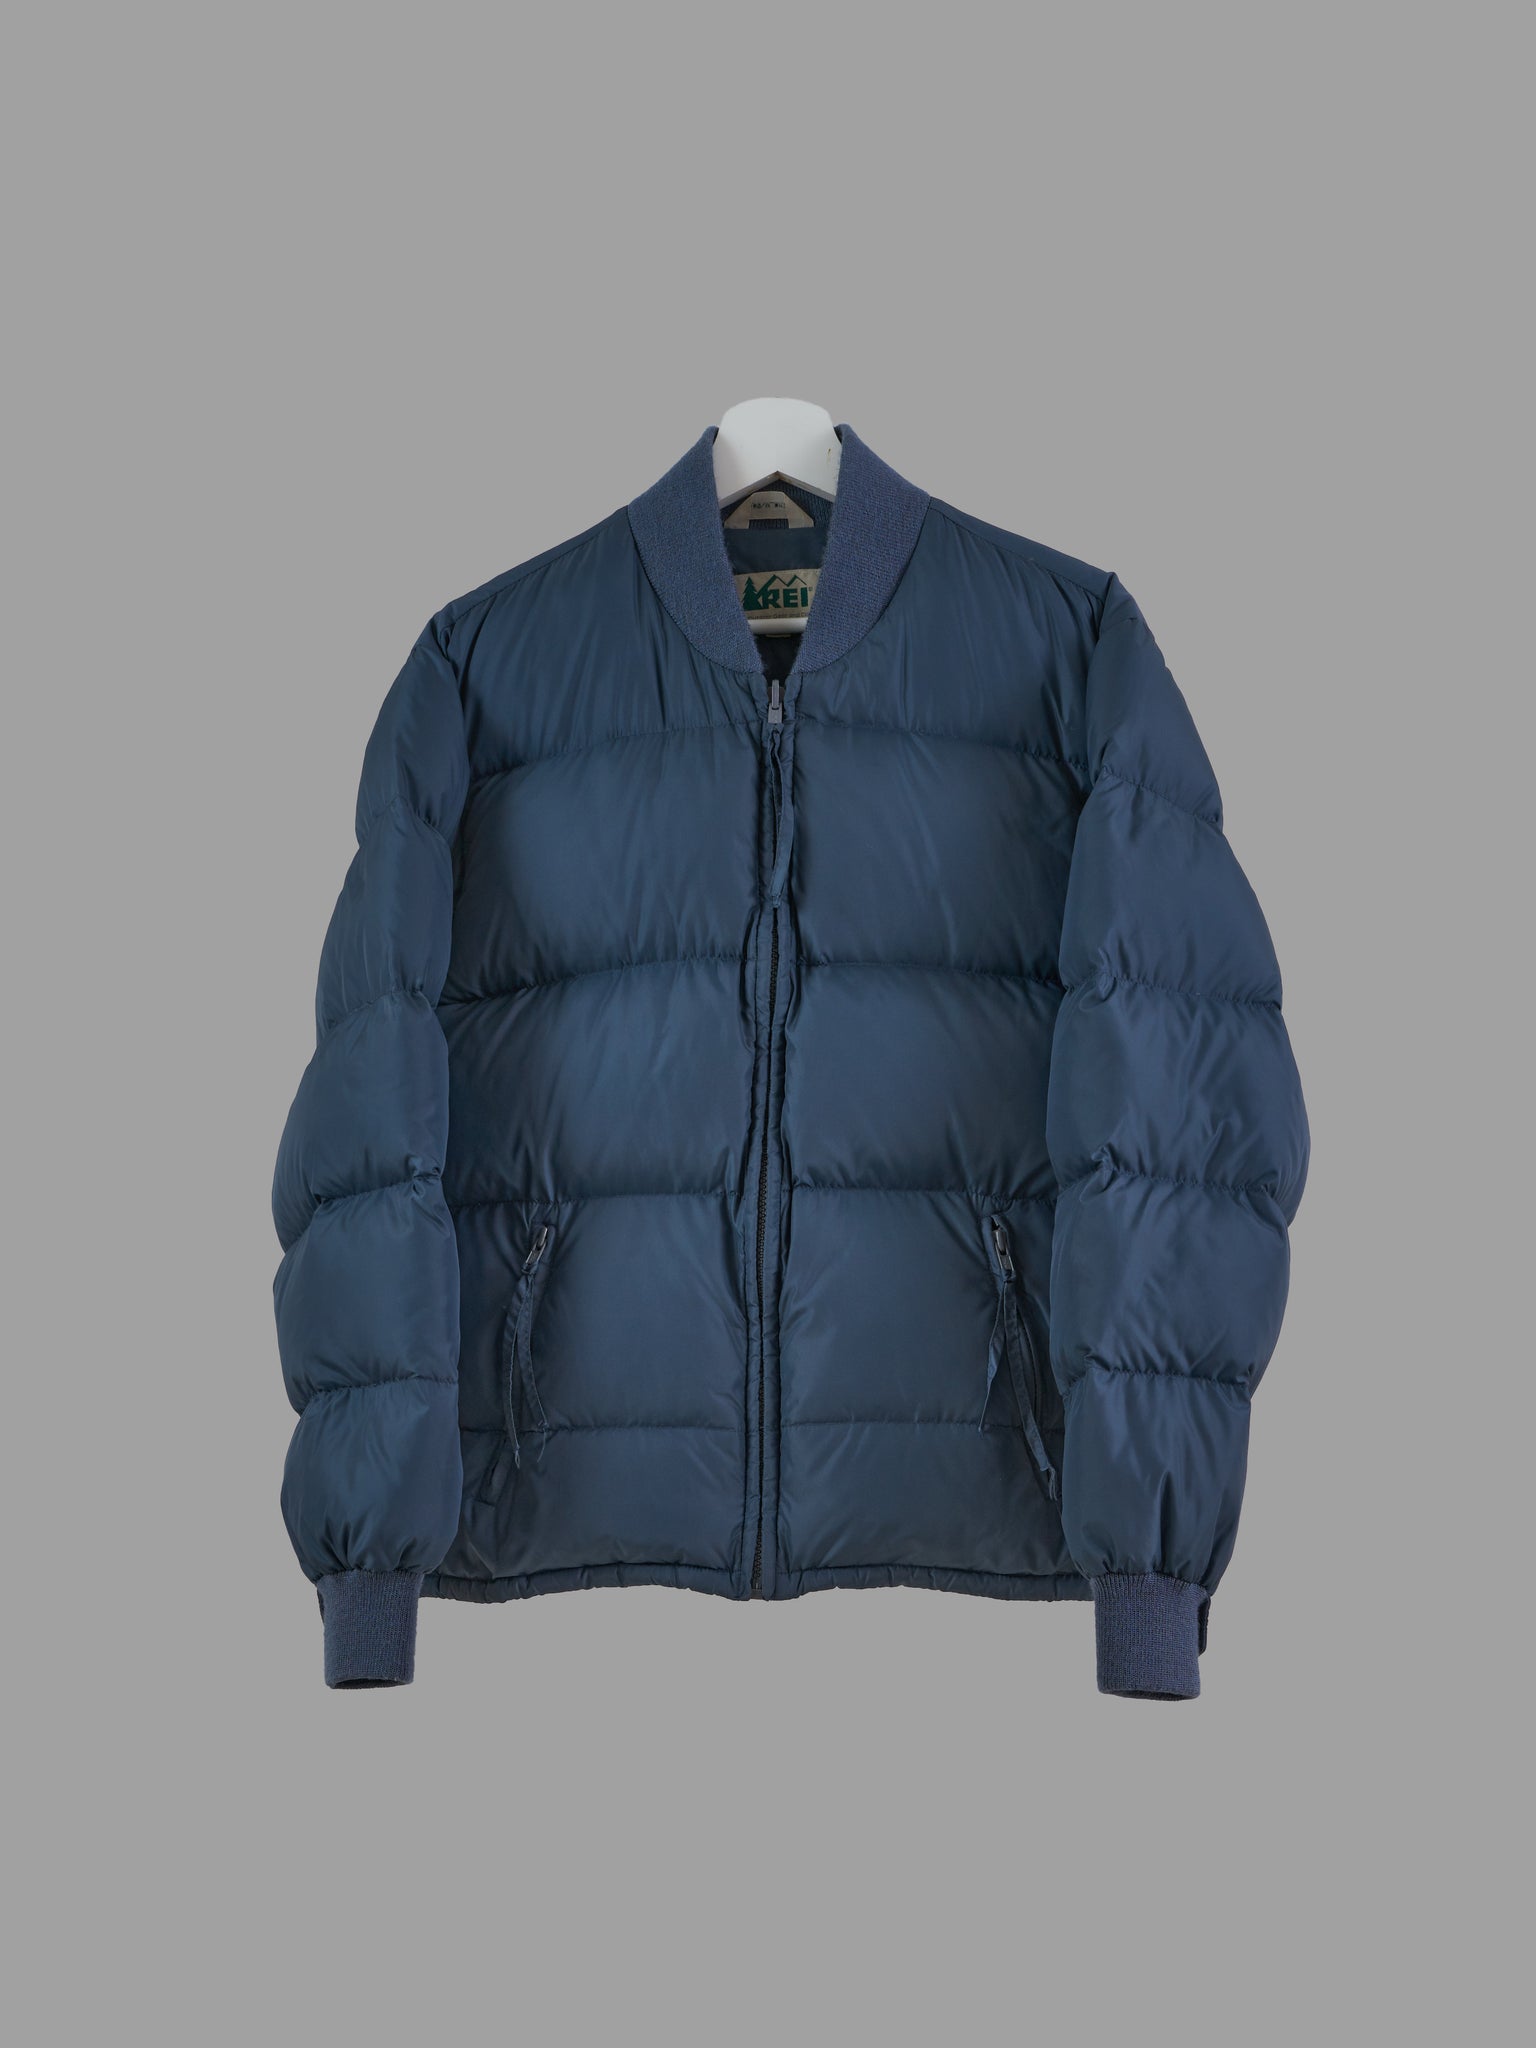 REI 1990s petrol blue nylon down bomber jacket - mens S XS